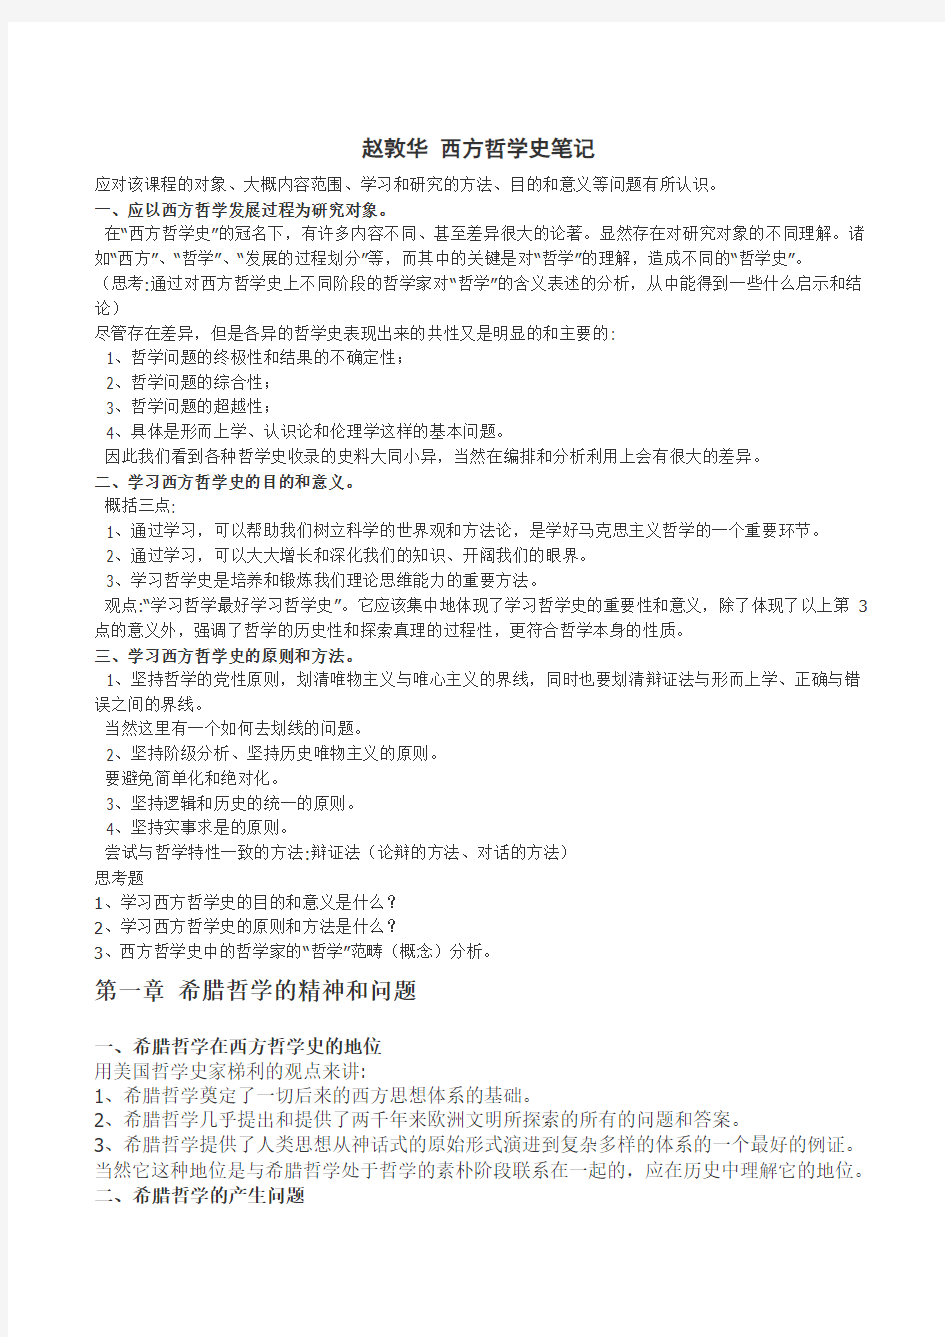 (本人已考上北大)西方哲学史考研笔记-赵敦华,自己整理好的打印版